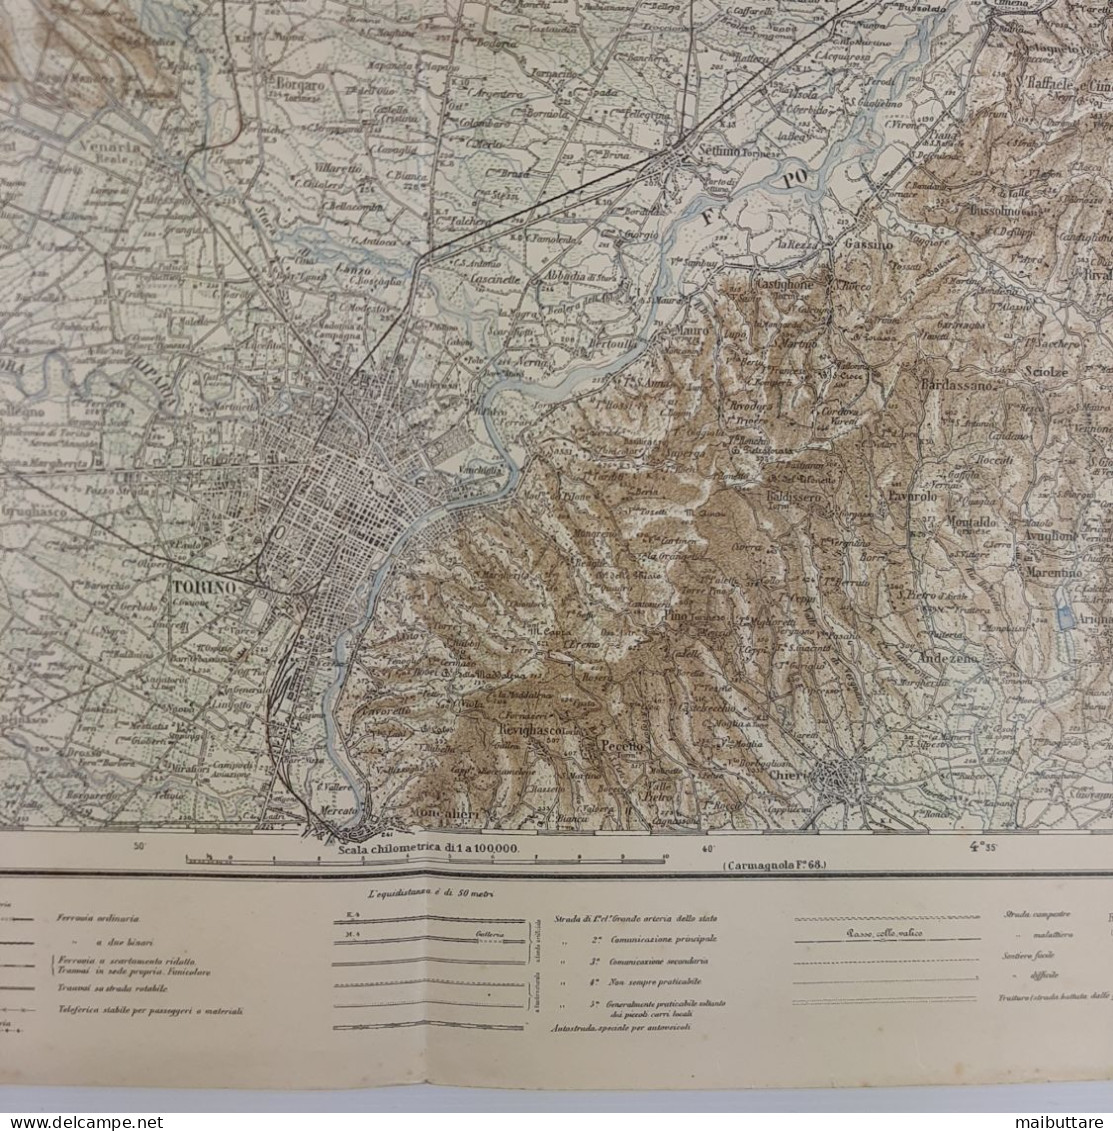 Carta Geografica, Cartina Mappa Militare Torino Piemonte F56 Della Carta D'Italia Scala 1:25.000 - Geographical Maps